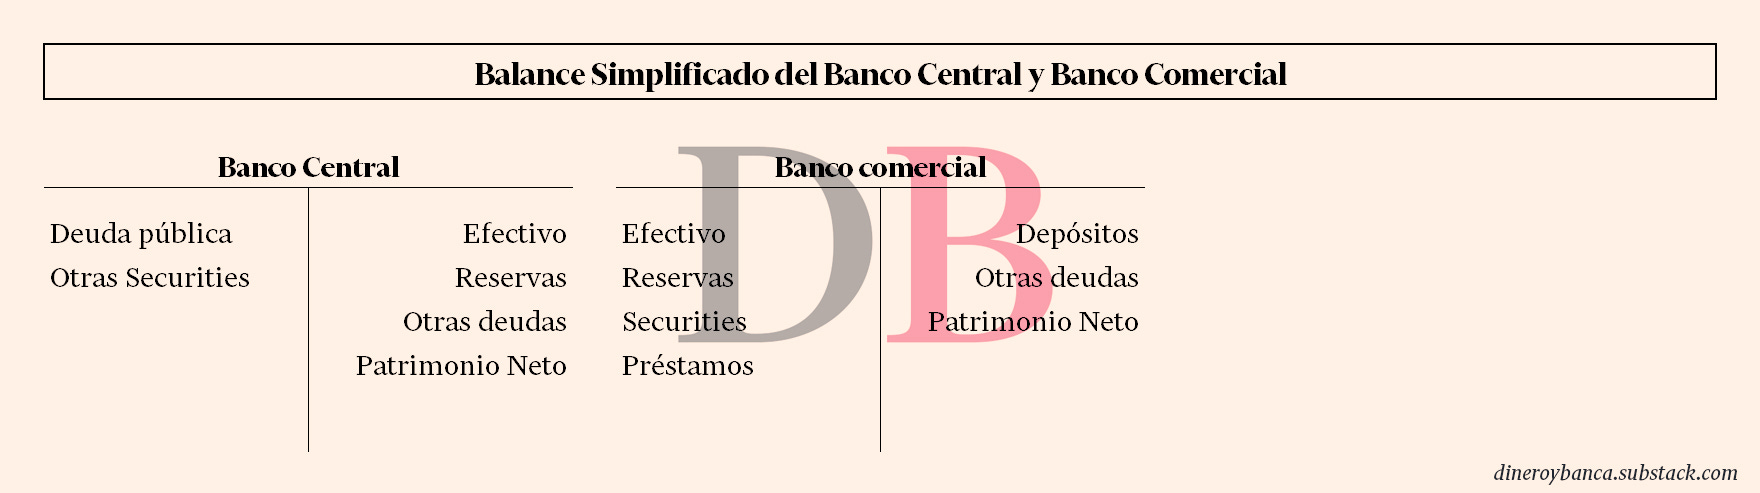 Balance simplificado del banco central y del banco comercial